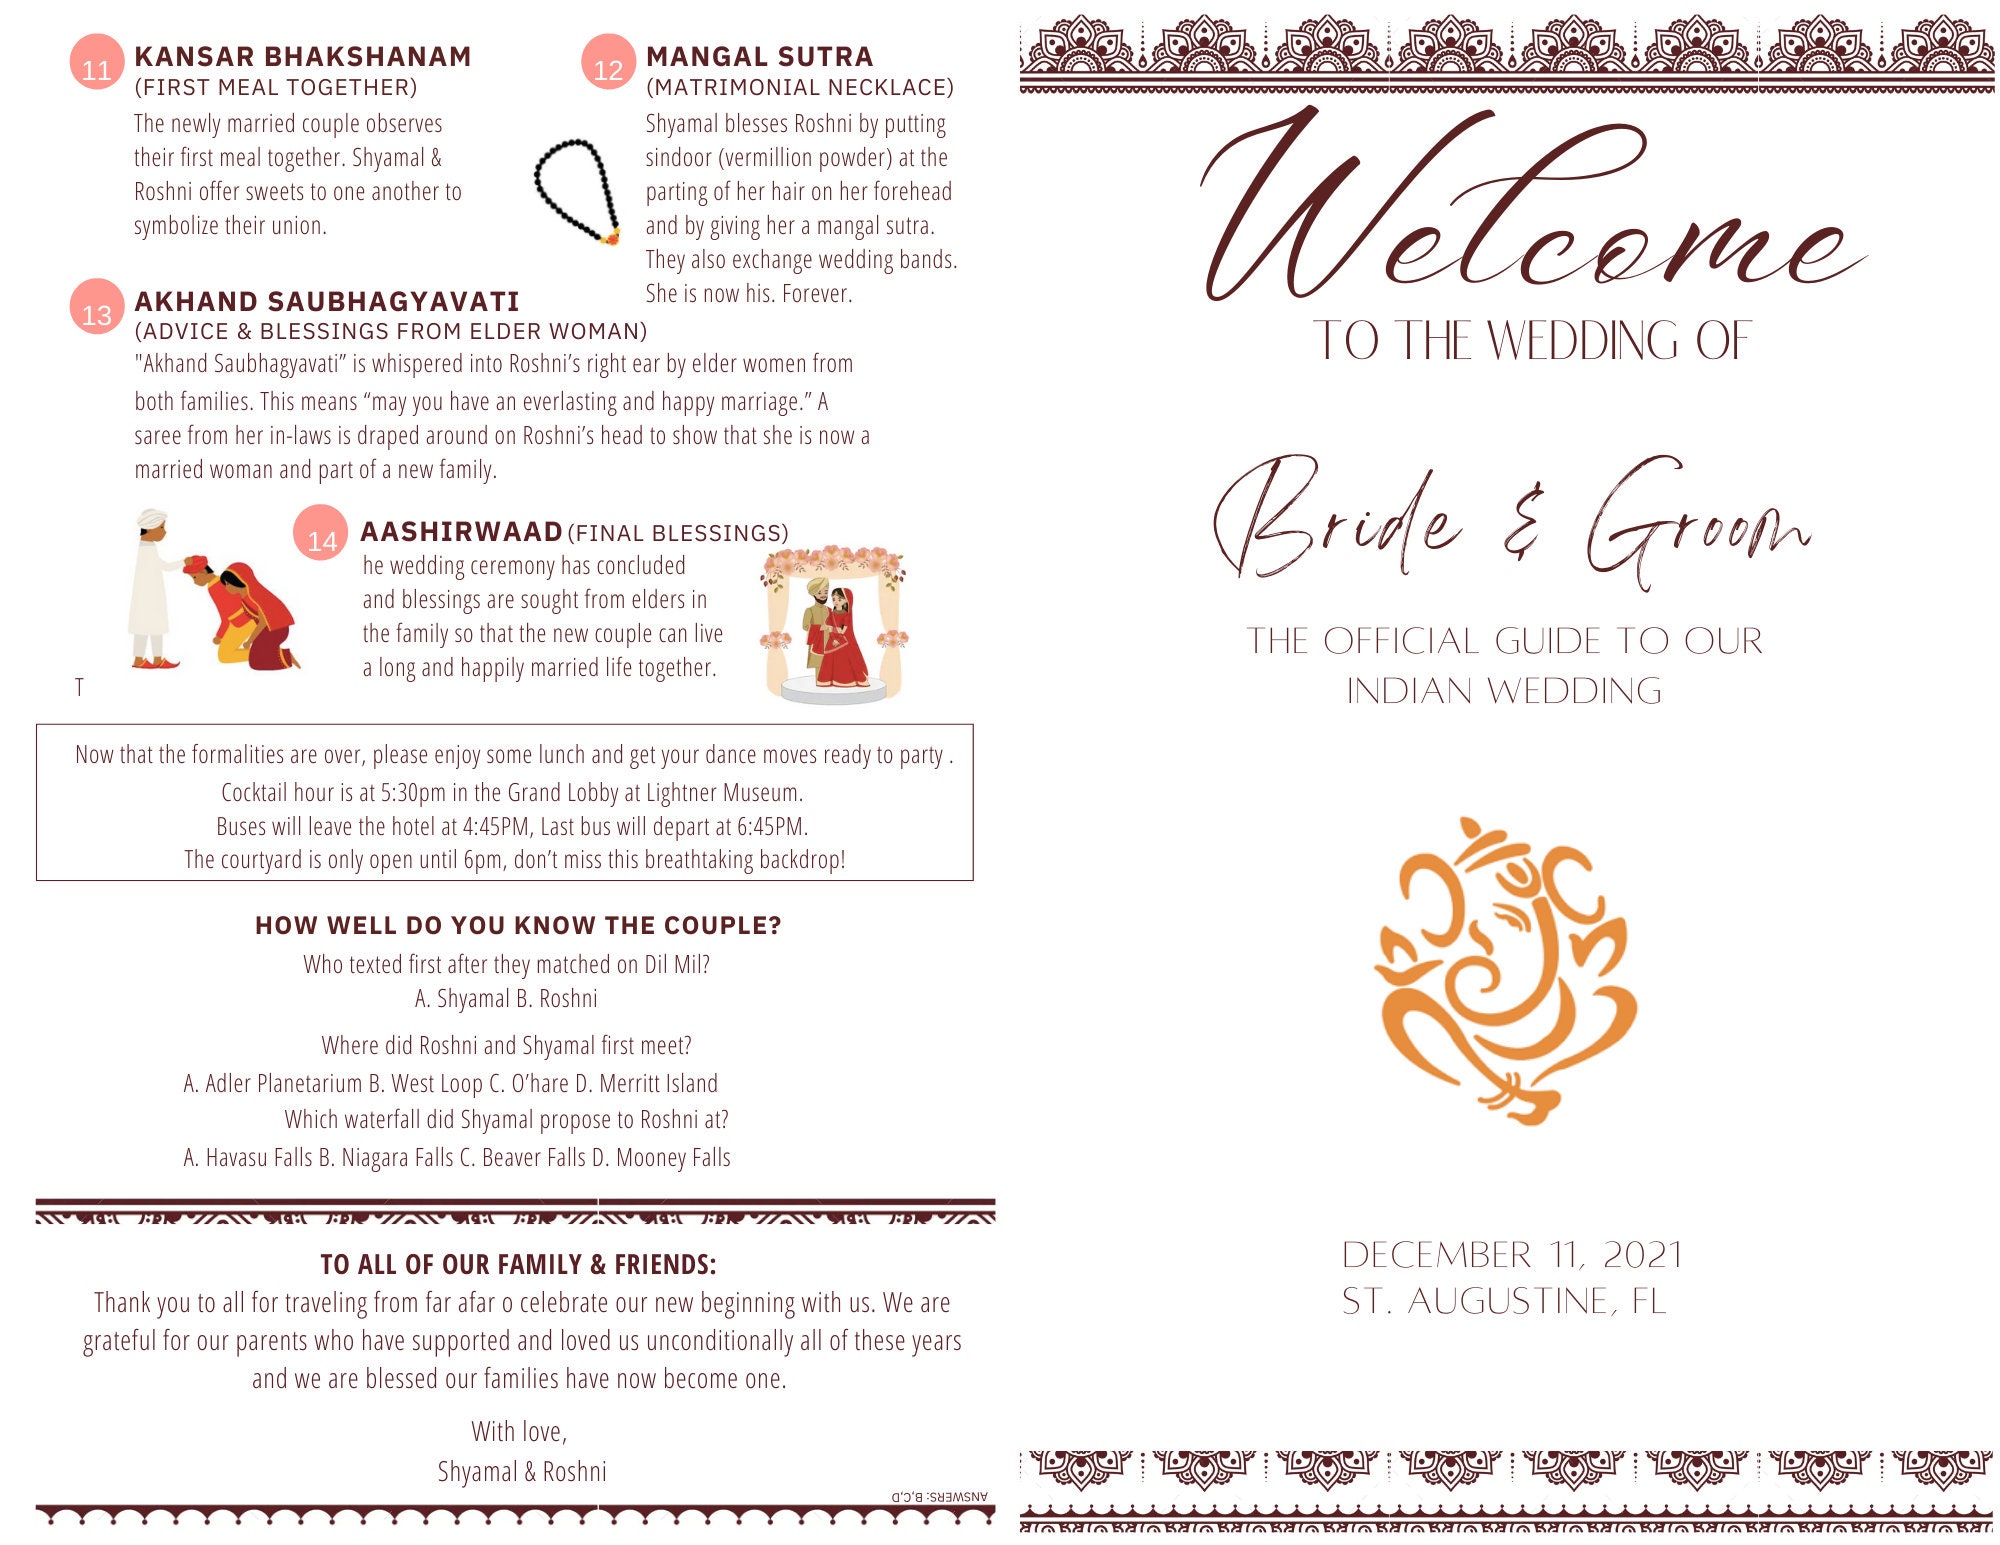 Hindu/indian Wedding Program Timeline or Fun Fact Sheet photo